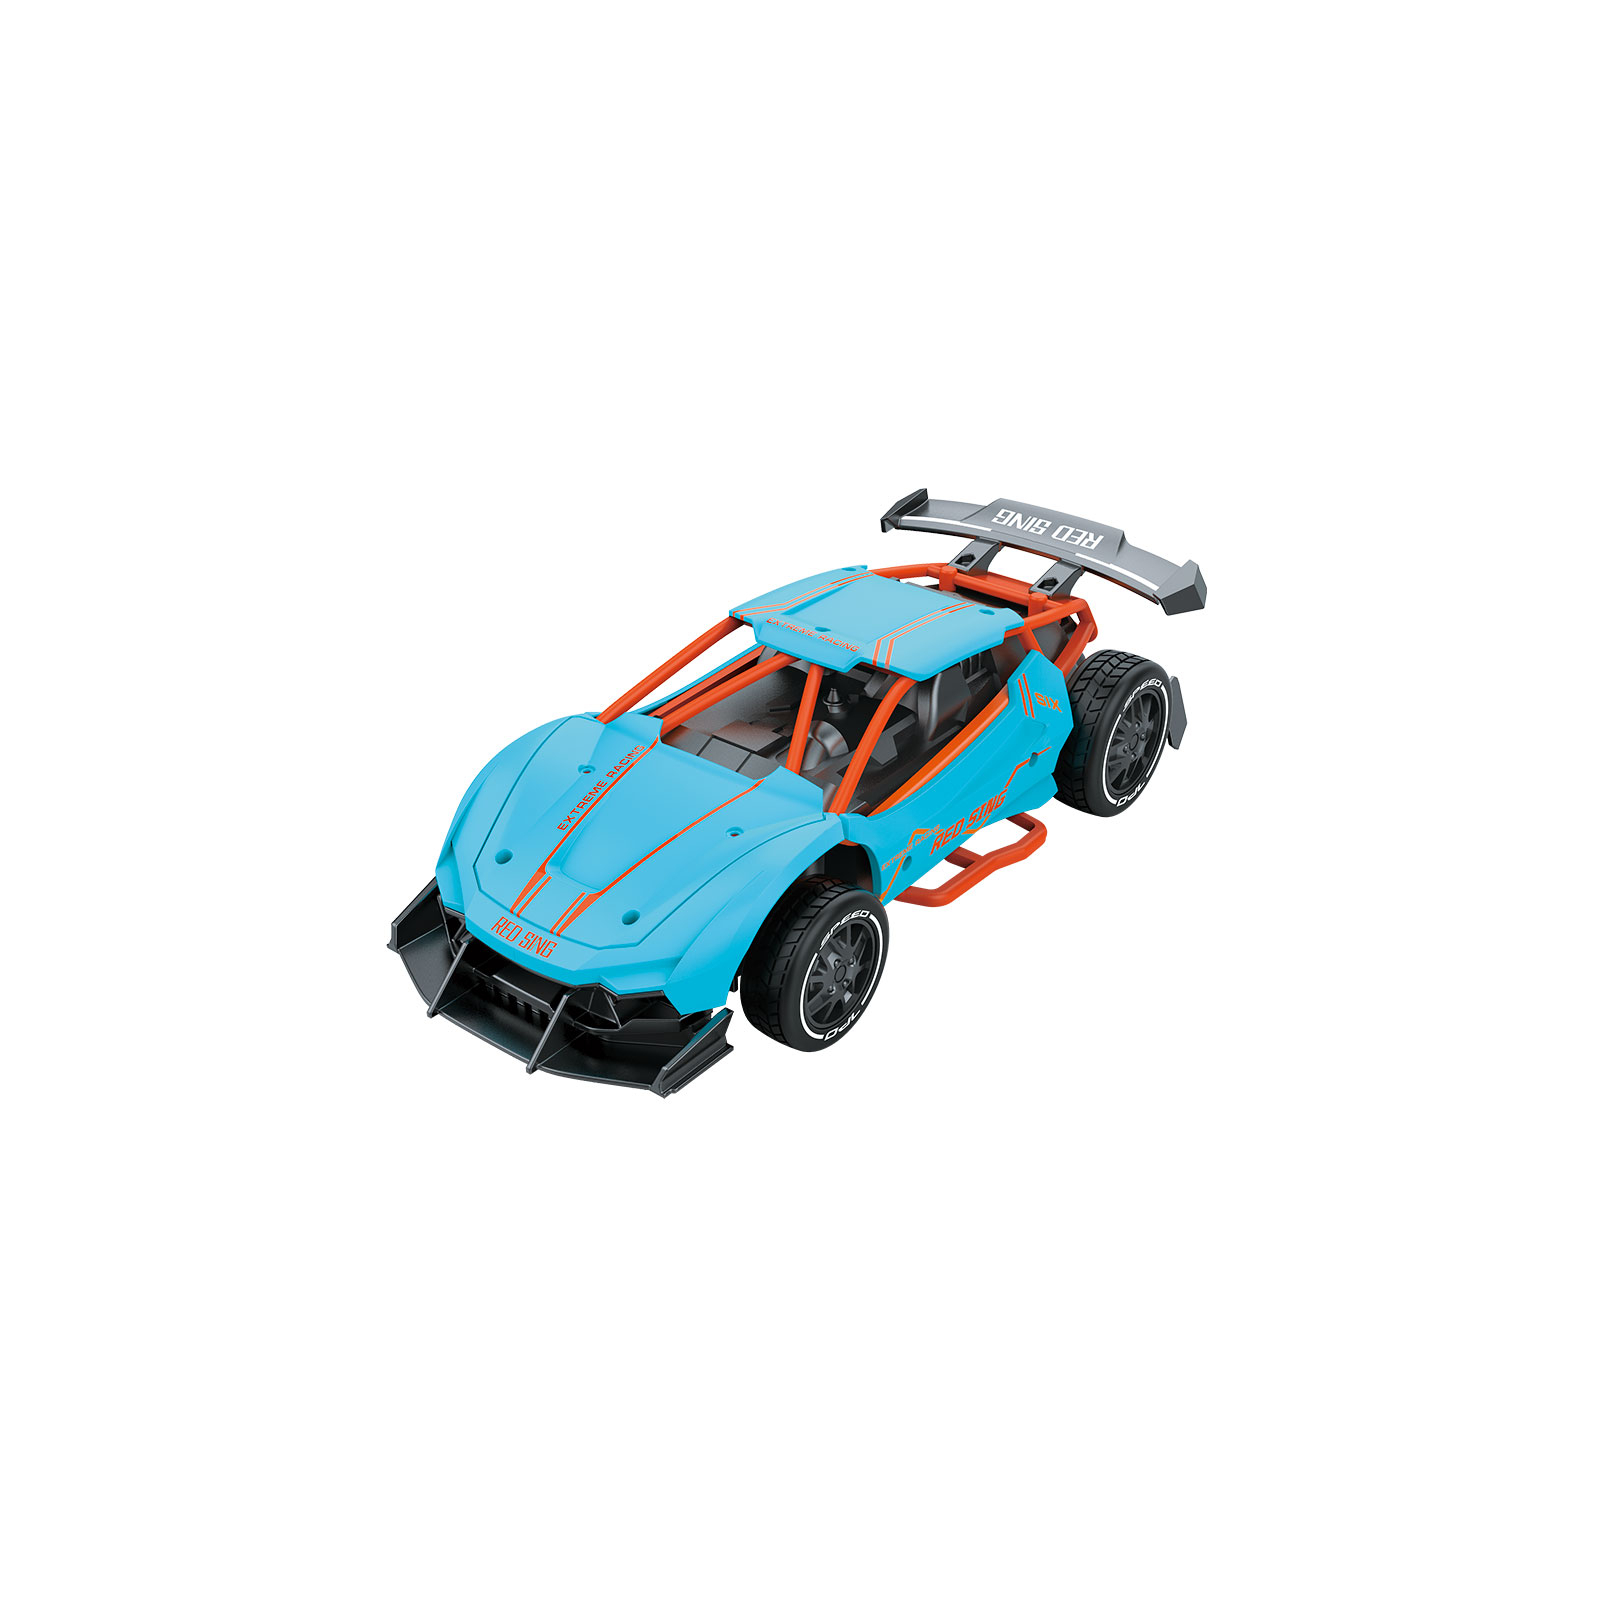 Радіокерована іграшка Sulong Toys Speed racing drift – Red Sing (блакитний, 1:24) (SL-292RHB)